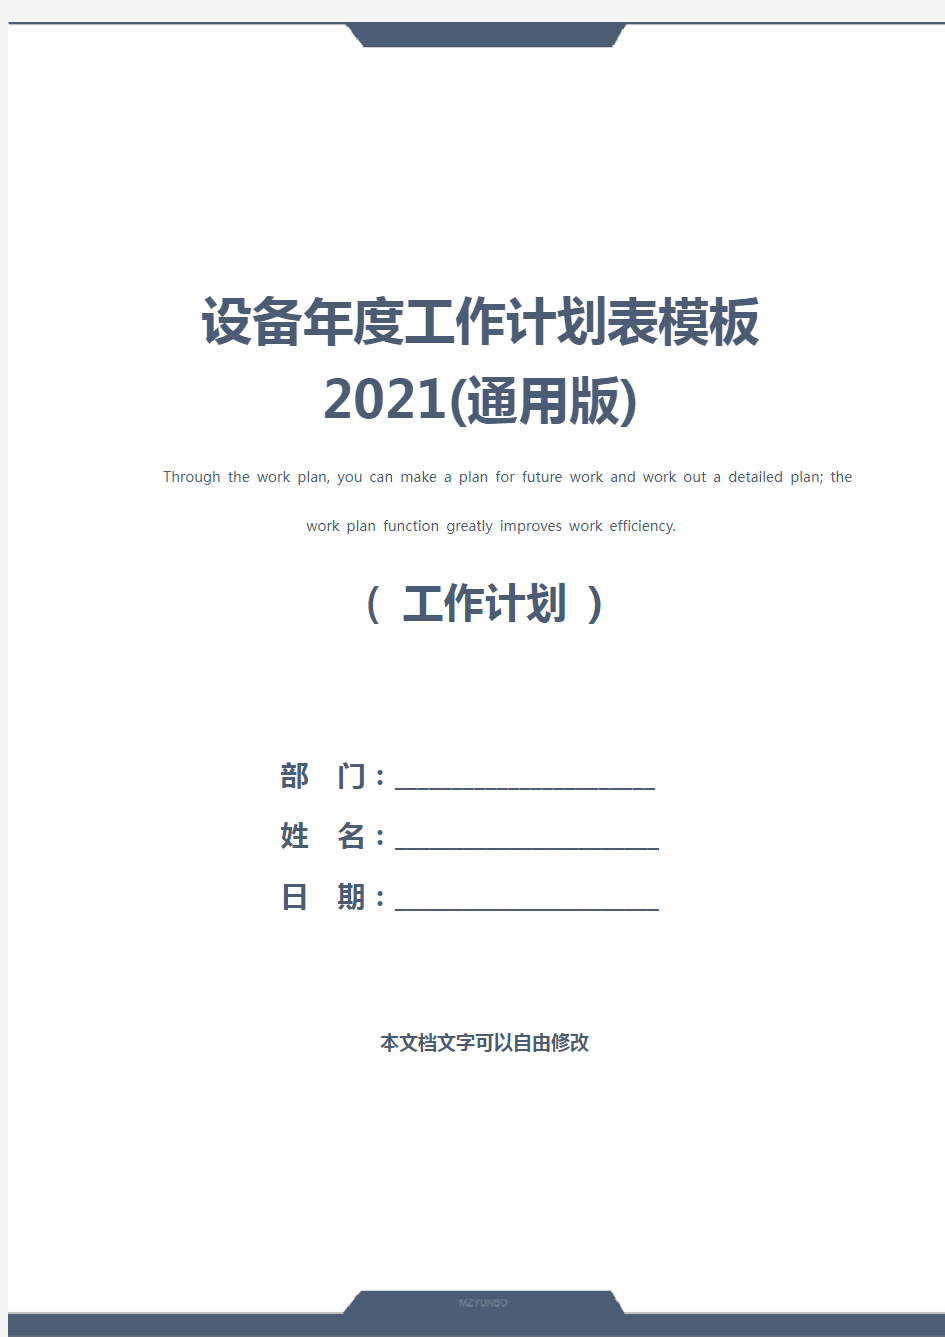 设备年度工作计划表模板2021(通用版)